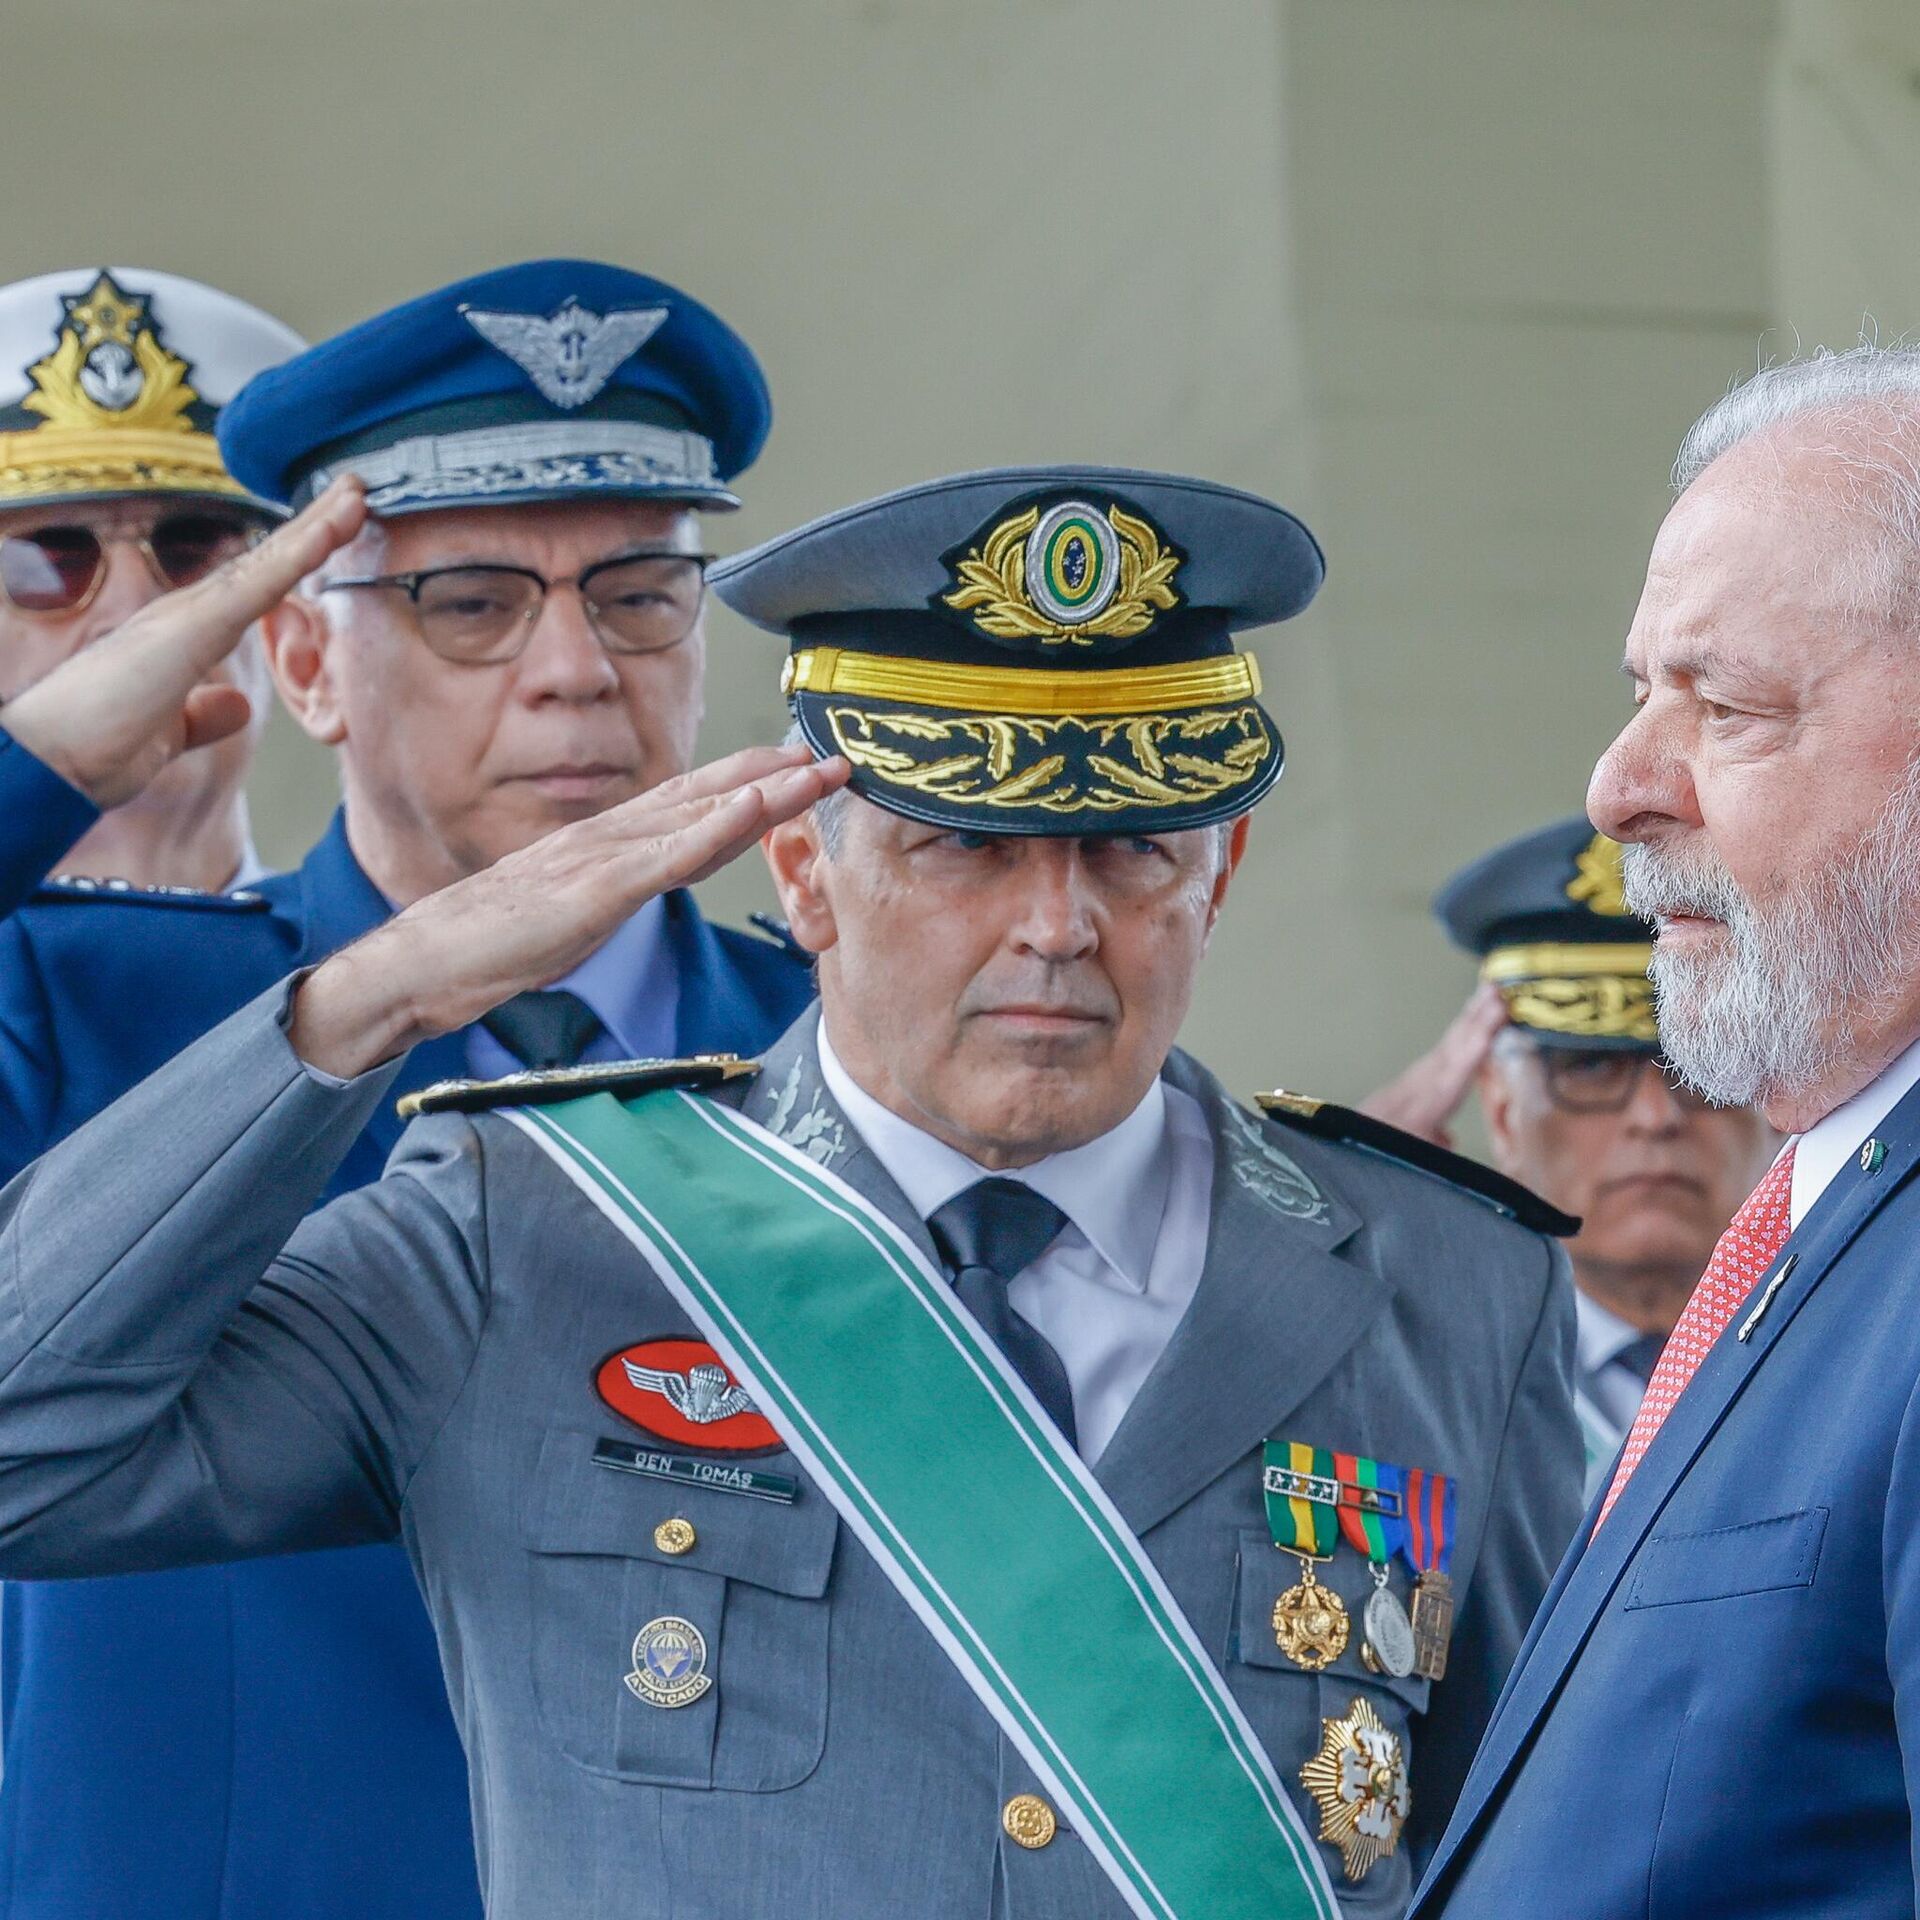 19 de abril de 2023: Exército Brasileiro celebra 375 anos » Força Aérea